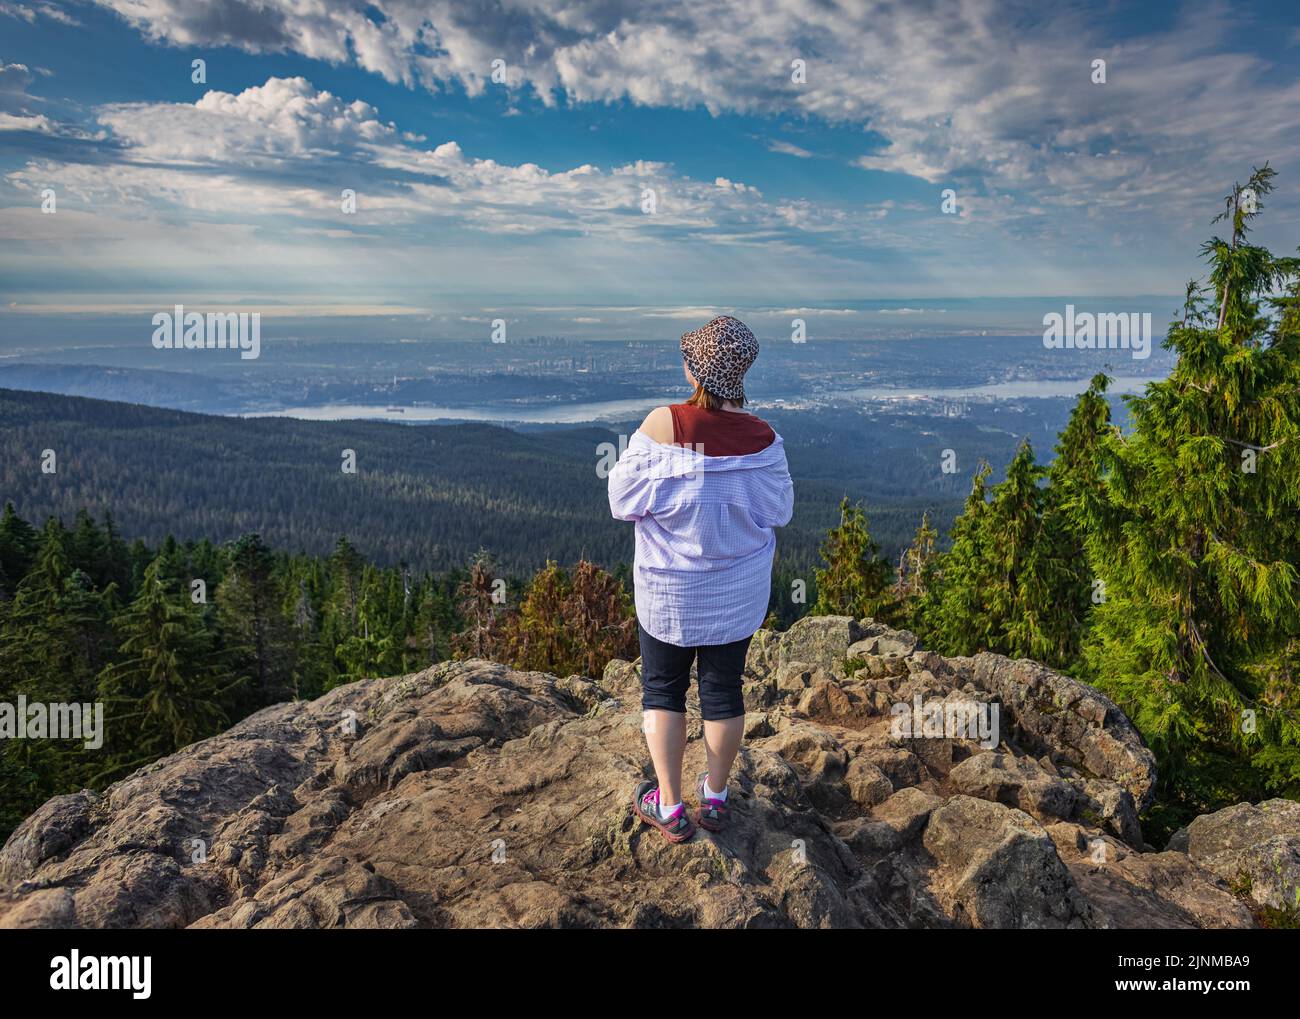 Frau, die am Rand der Klippe steht und den Blick auf das Tal, den Fluss und die Berge genießt. Reisen entlang Kanadas. Platz für Text kopieren, Landschaft c Stockfoto